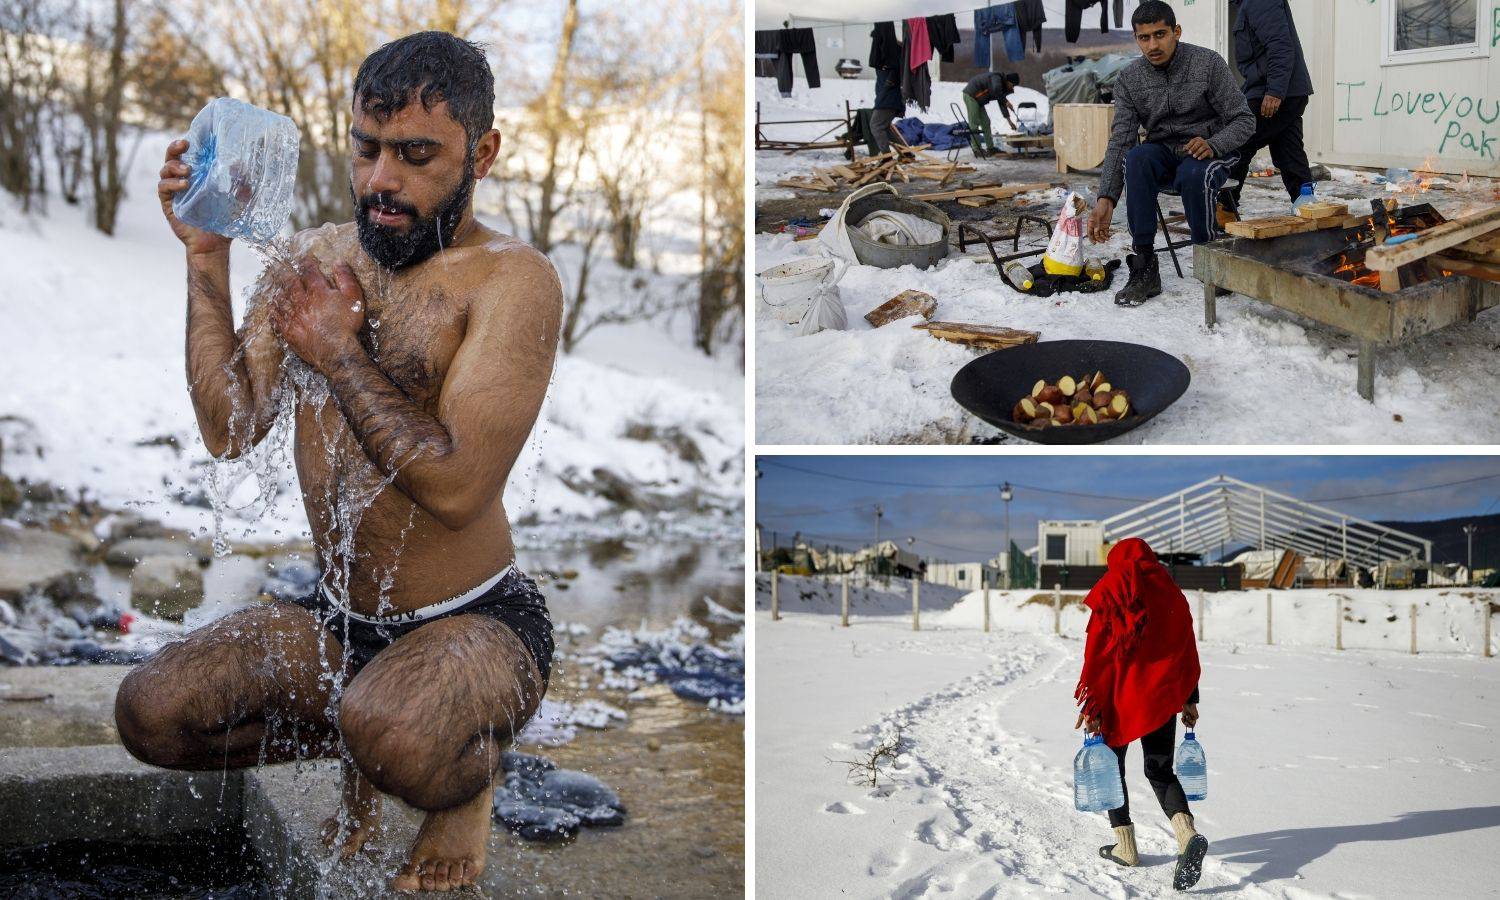 Pakao migranata na granici s Hrvatskom: Peru se u snijegu, nemaju grijanje ni toplu vodu